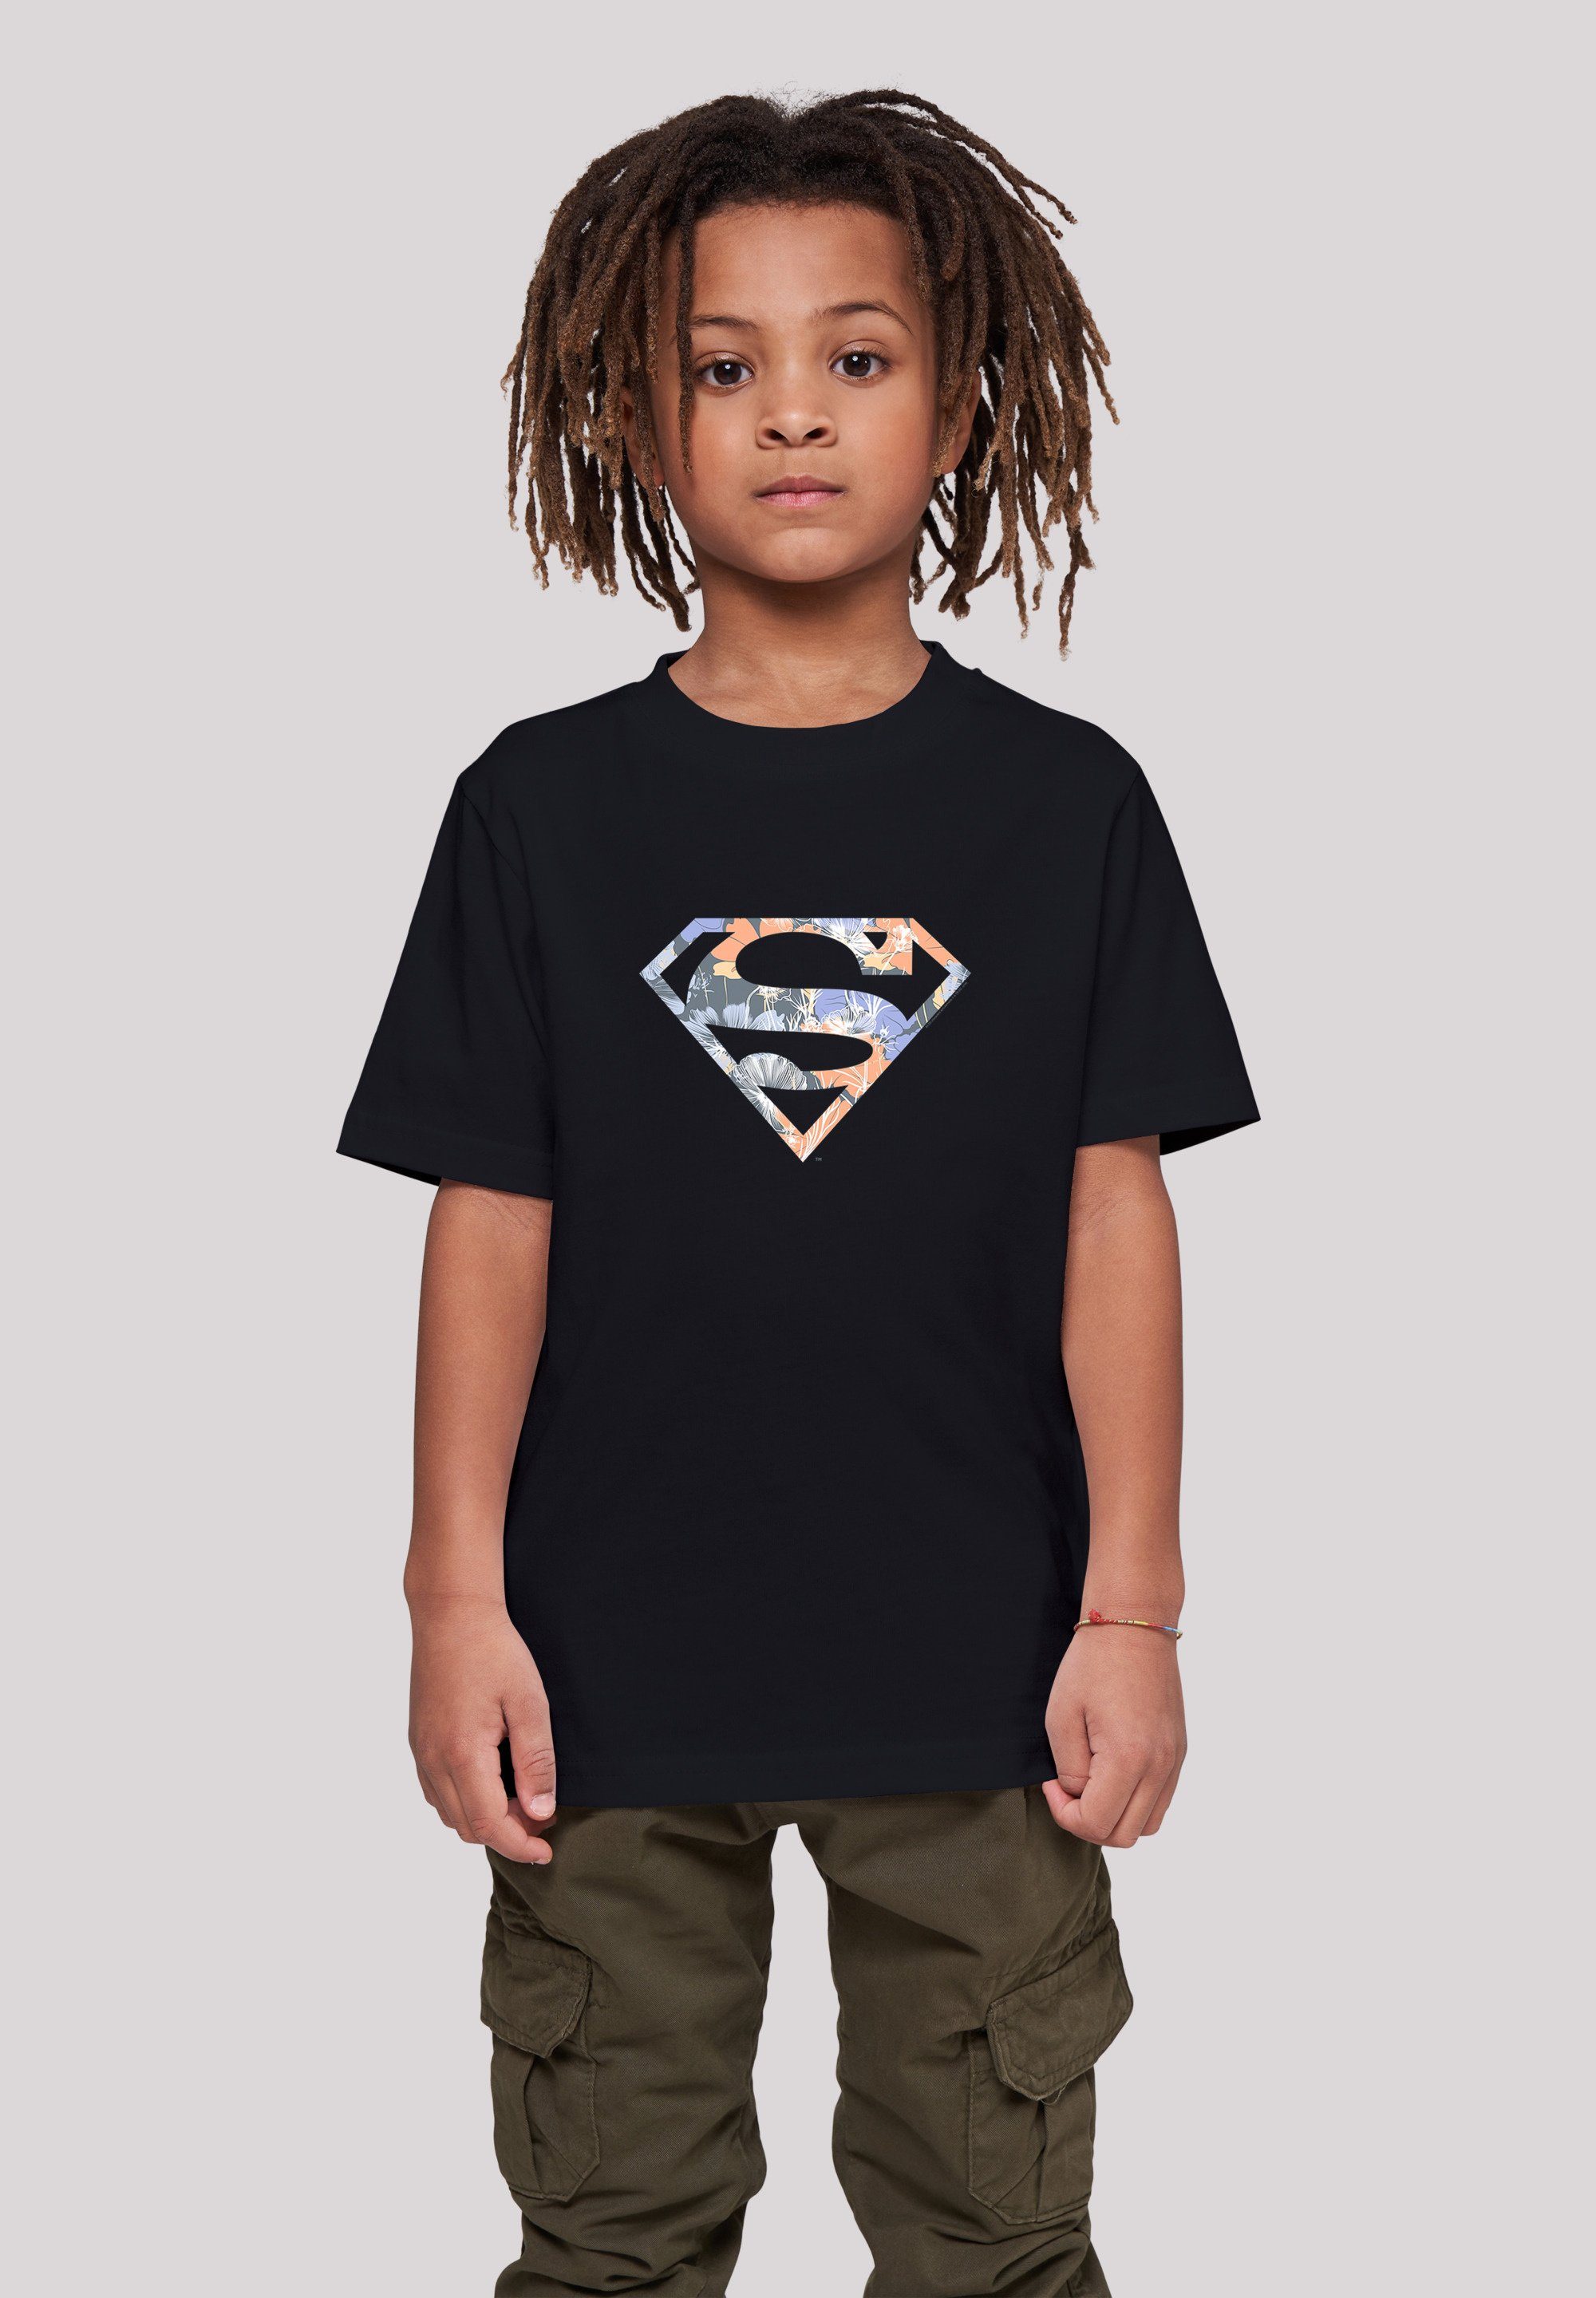 T-Shirt Comics Floral Superman DC F4NT4STIC Unisex Logo Kinder,Premium Superheld T-Shirt Merch,Jungen,Mädchen,Bedruckt